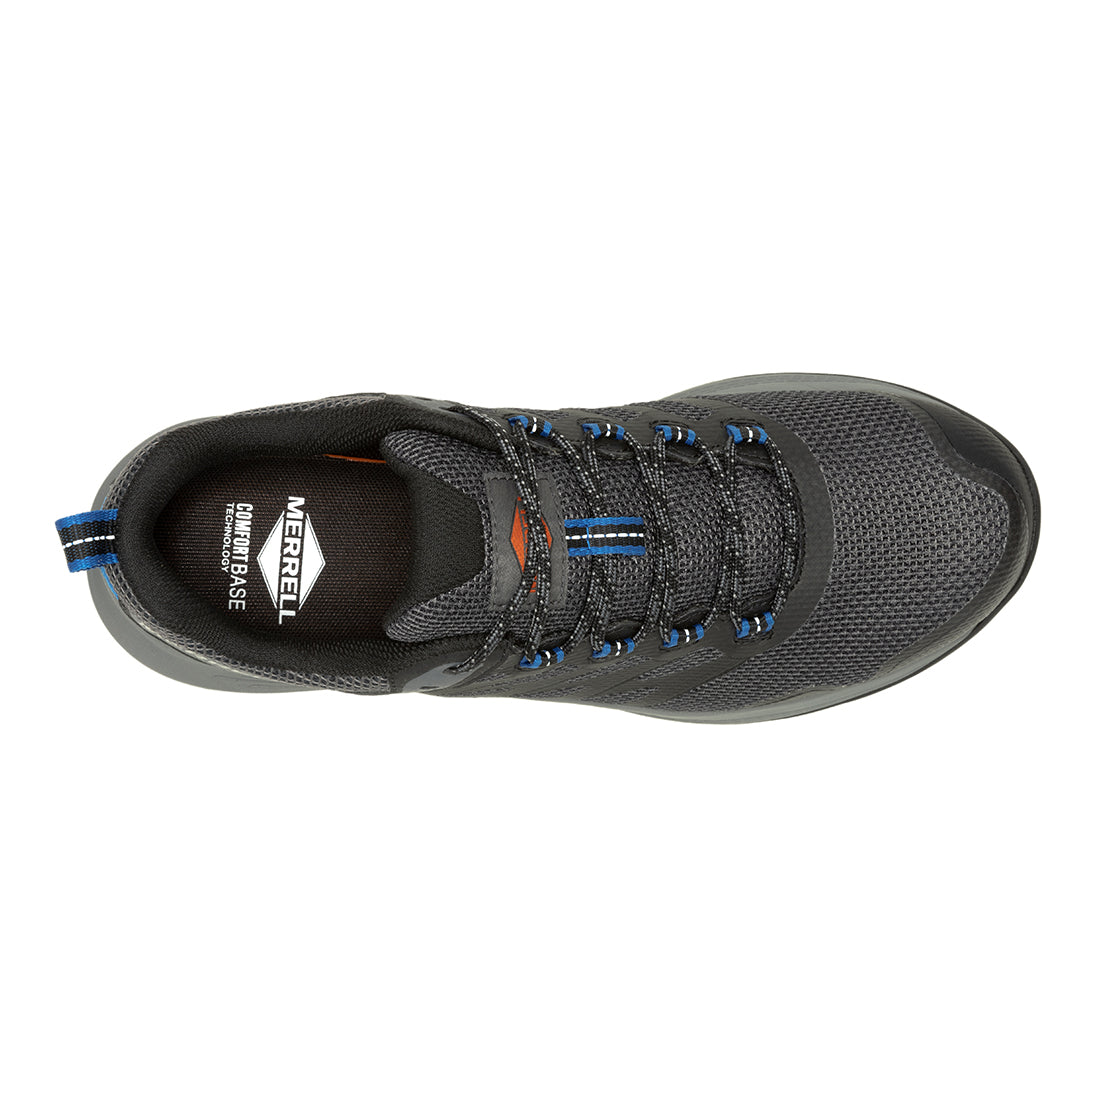 Nova 3 CF – Black/Blue Mens Work & Tactical Shoes